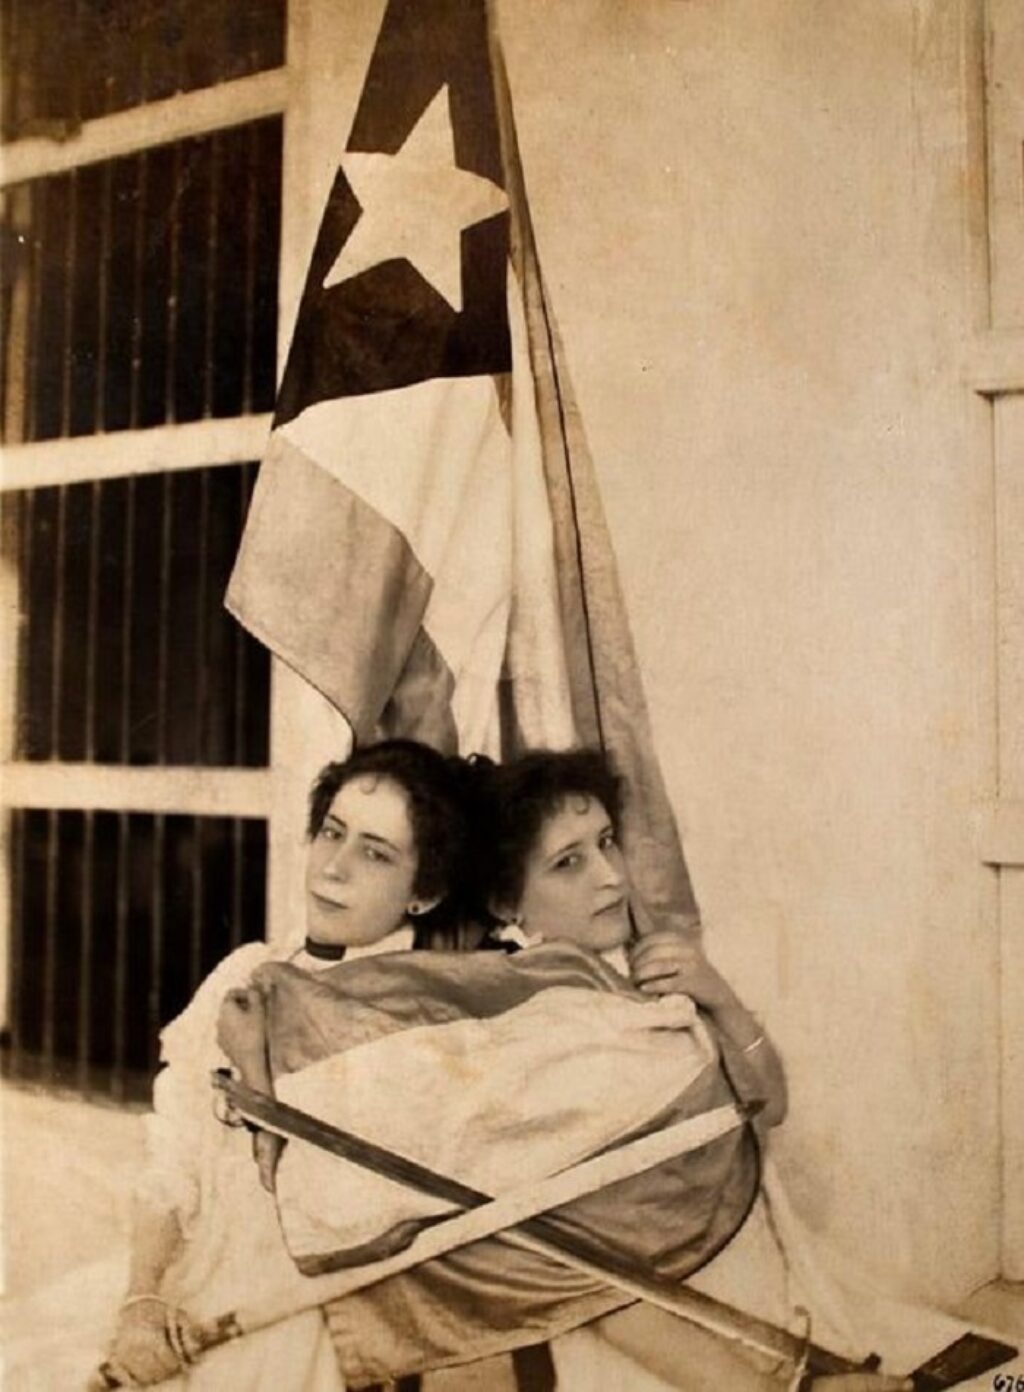 Foto tomada del libro Damas, esfinges y mambisas. Mujeres en la fotografía cubana 1840-1902, de la curadora y crítica de arte cubana Grethel Morell.